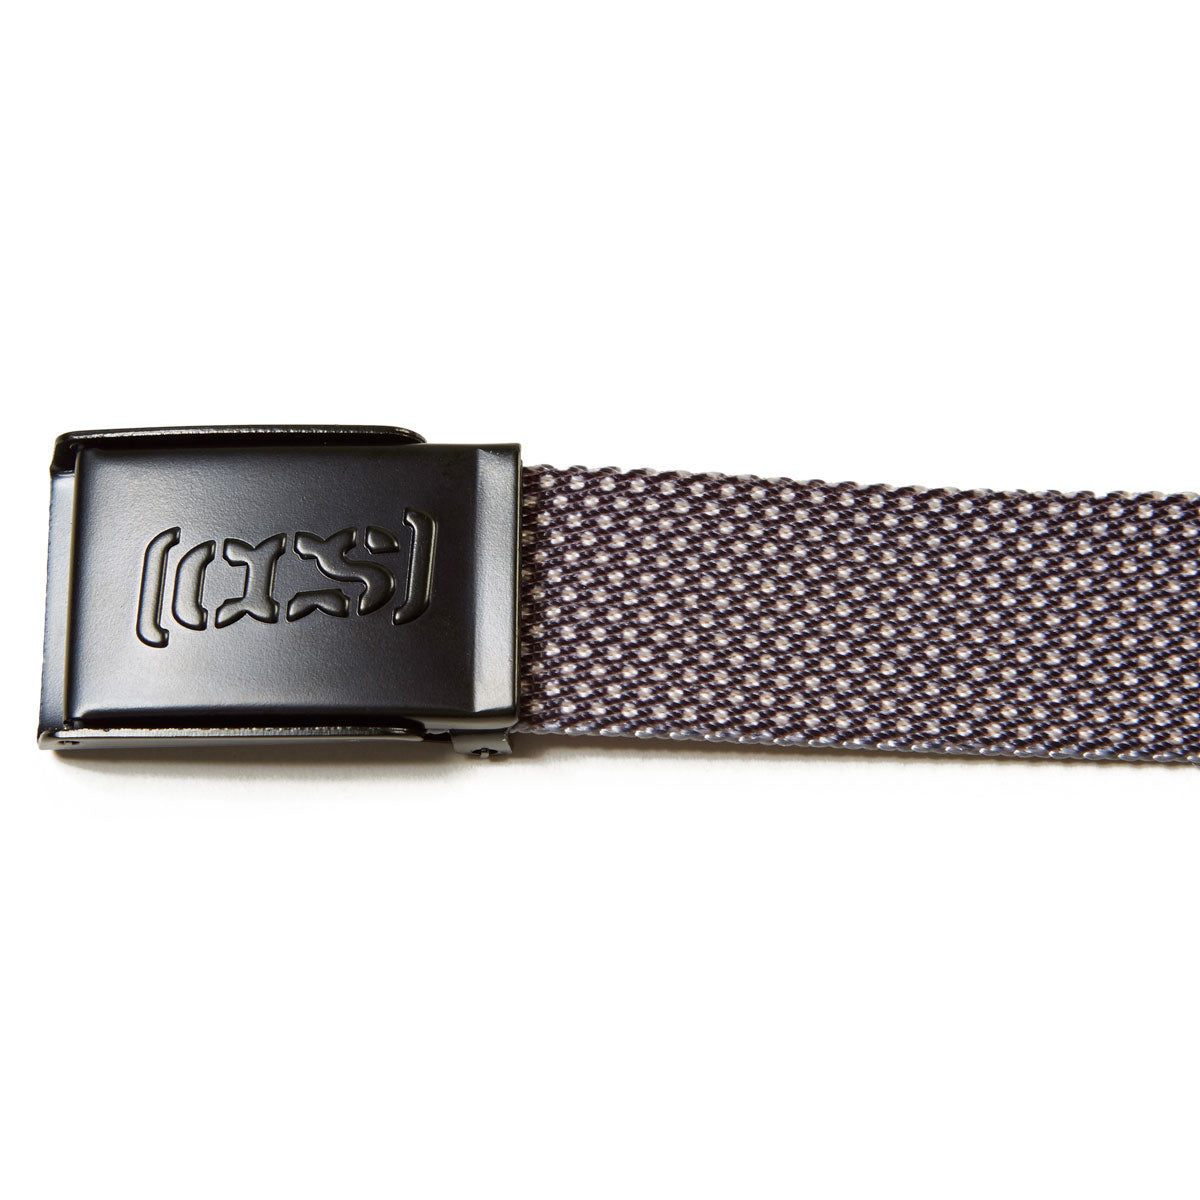 CCS Black Logo Buckle Belt - Polka Dot image 3